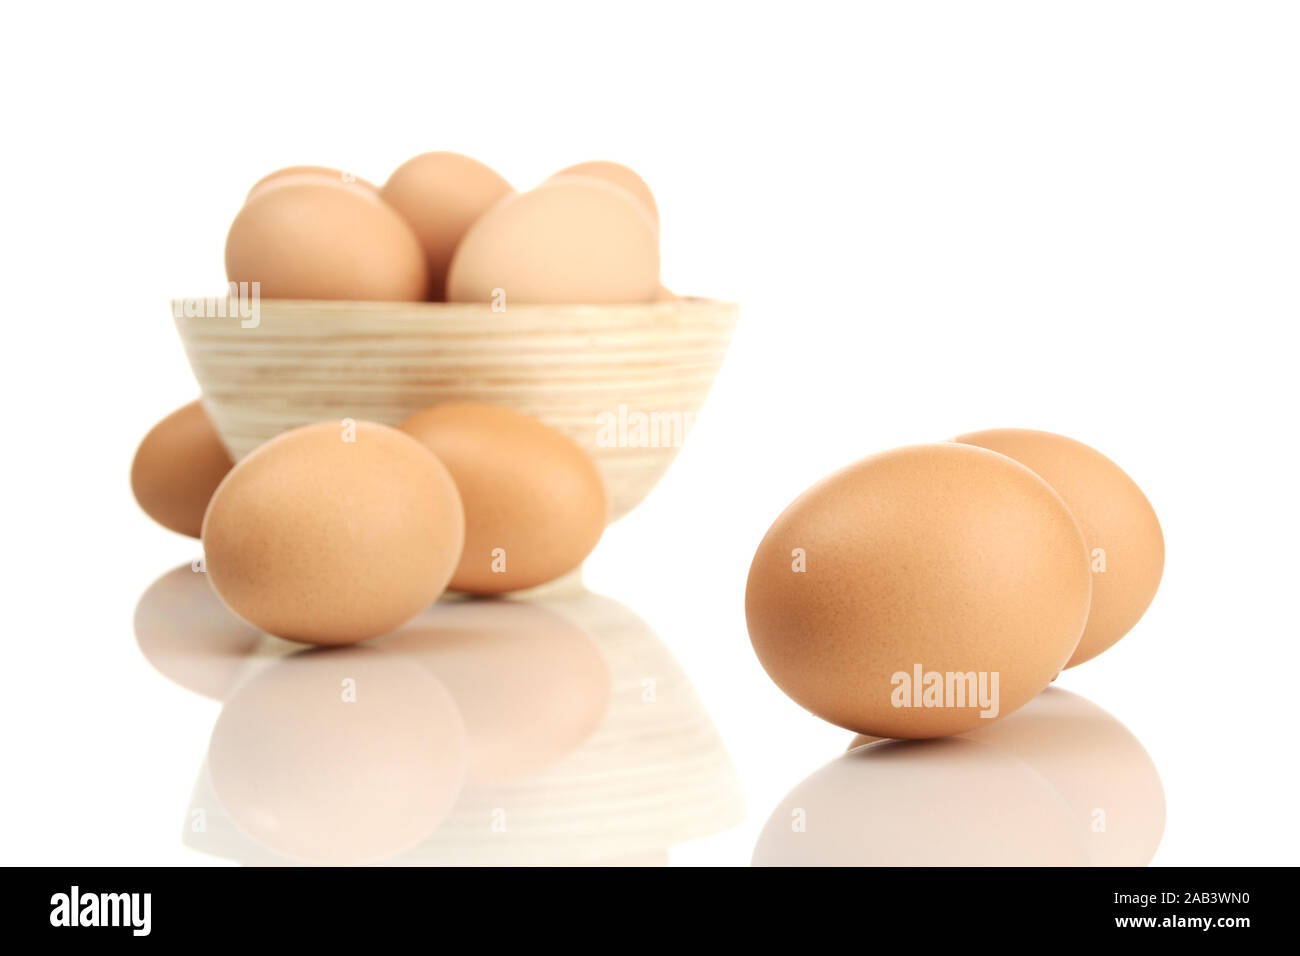 Schüssel mit frischen Eiern |Bowl with fresh eggs| Stock Photo